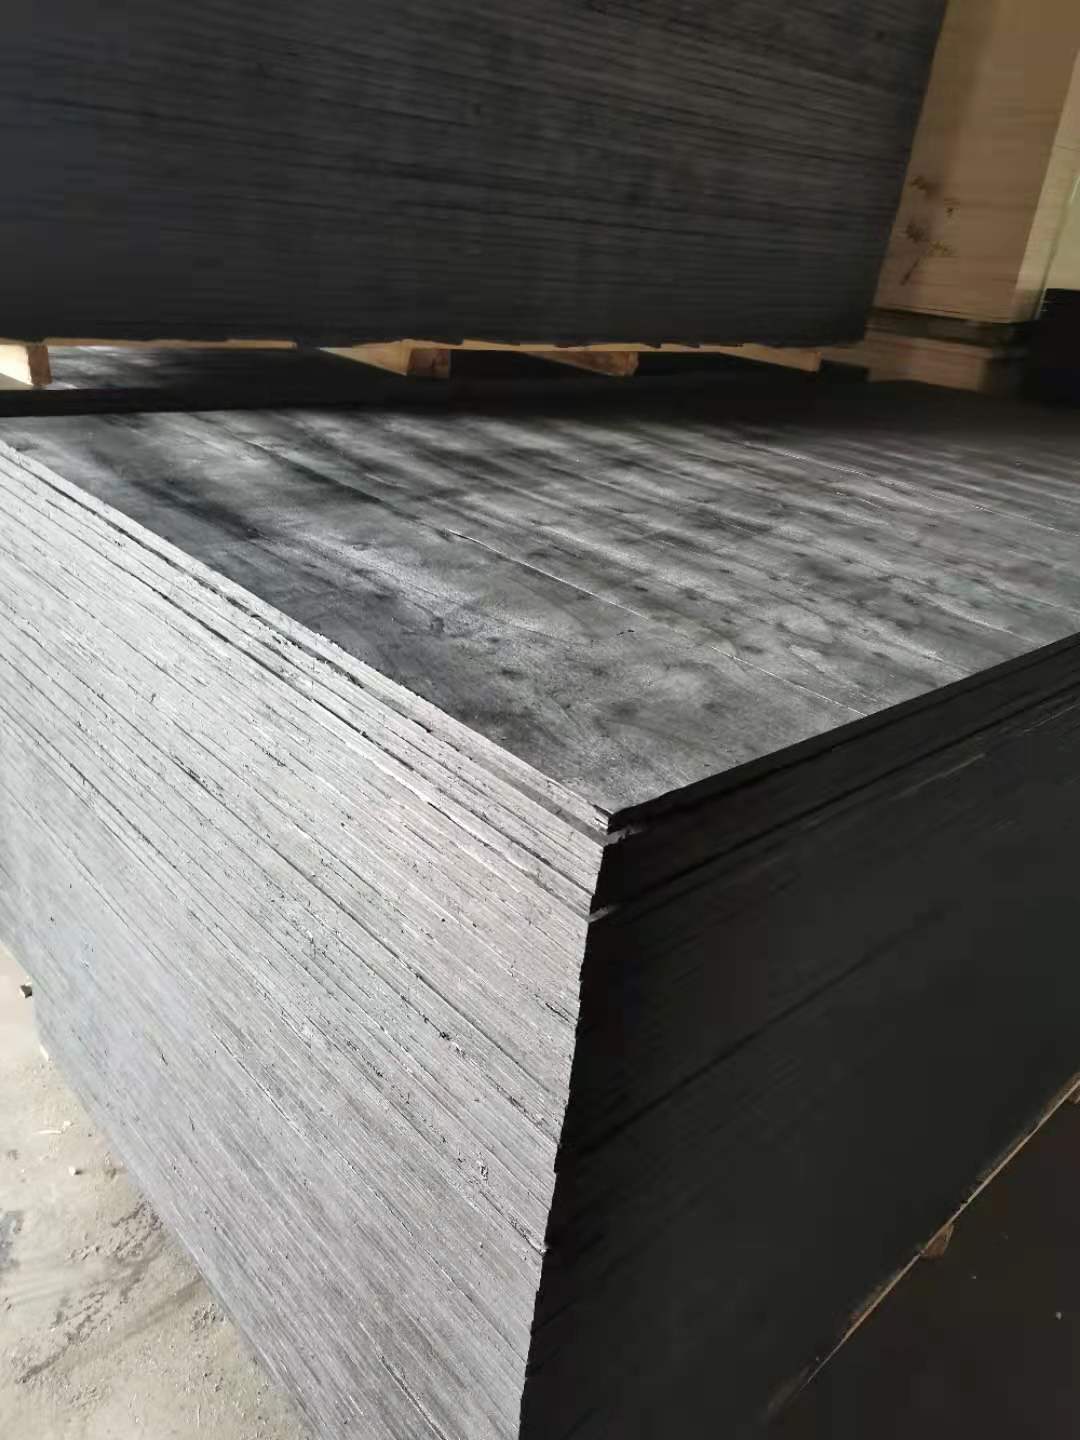 内蒙古沥青软木板填缝用沥青麻筋市场价家